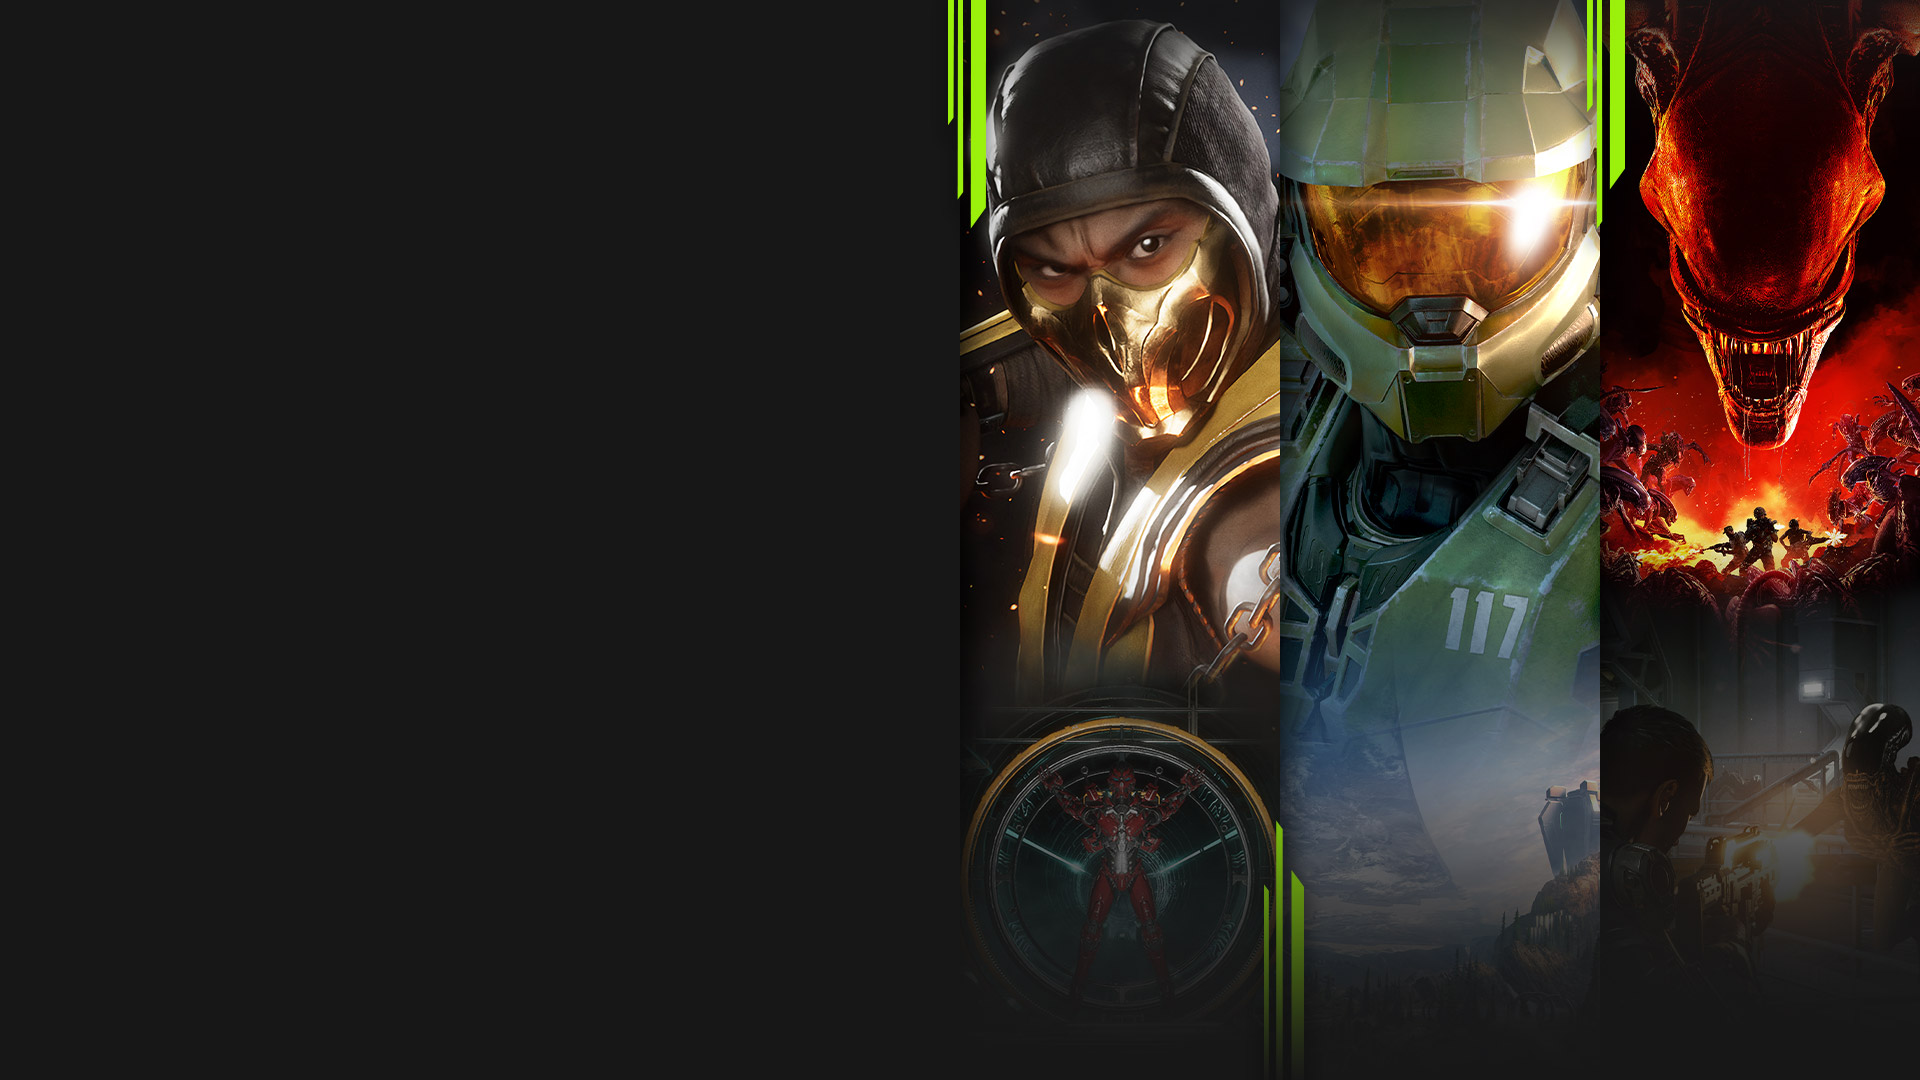 Изображения из нескольких игр, доступных сейчас с Xbox Game Pass, включая Mortal Kombat 11, Halo Infinite, Aliens: Fireteam Elite и Warhammer 40,000: Battlesector.